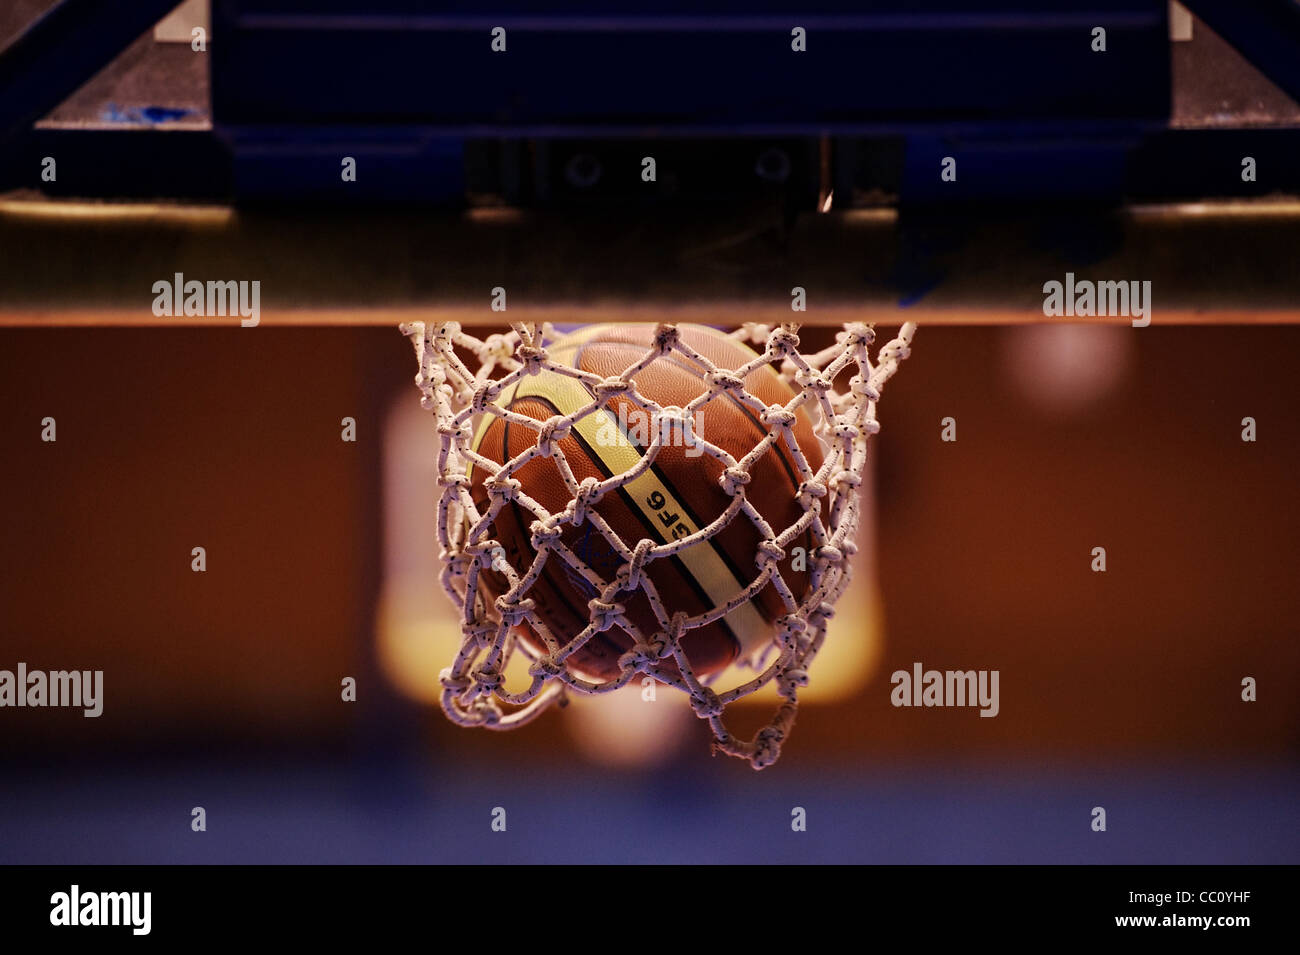 Basketball game. Stock Photo